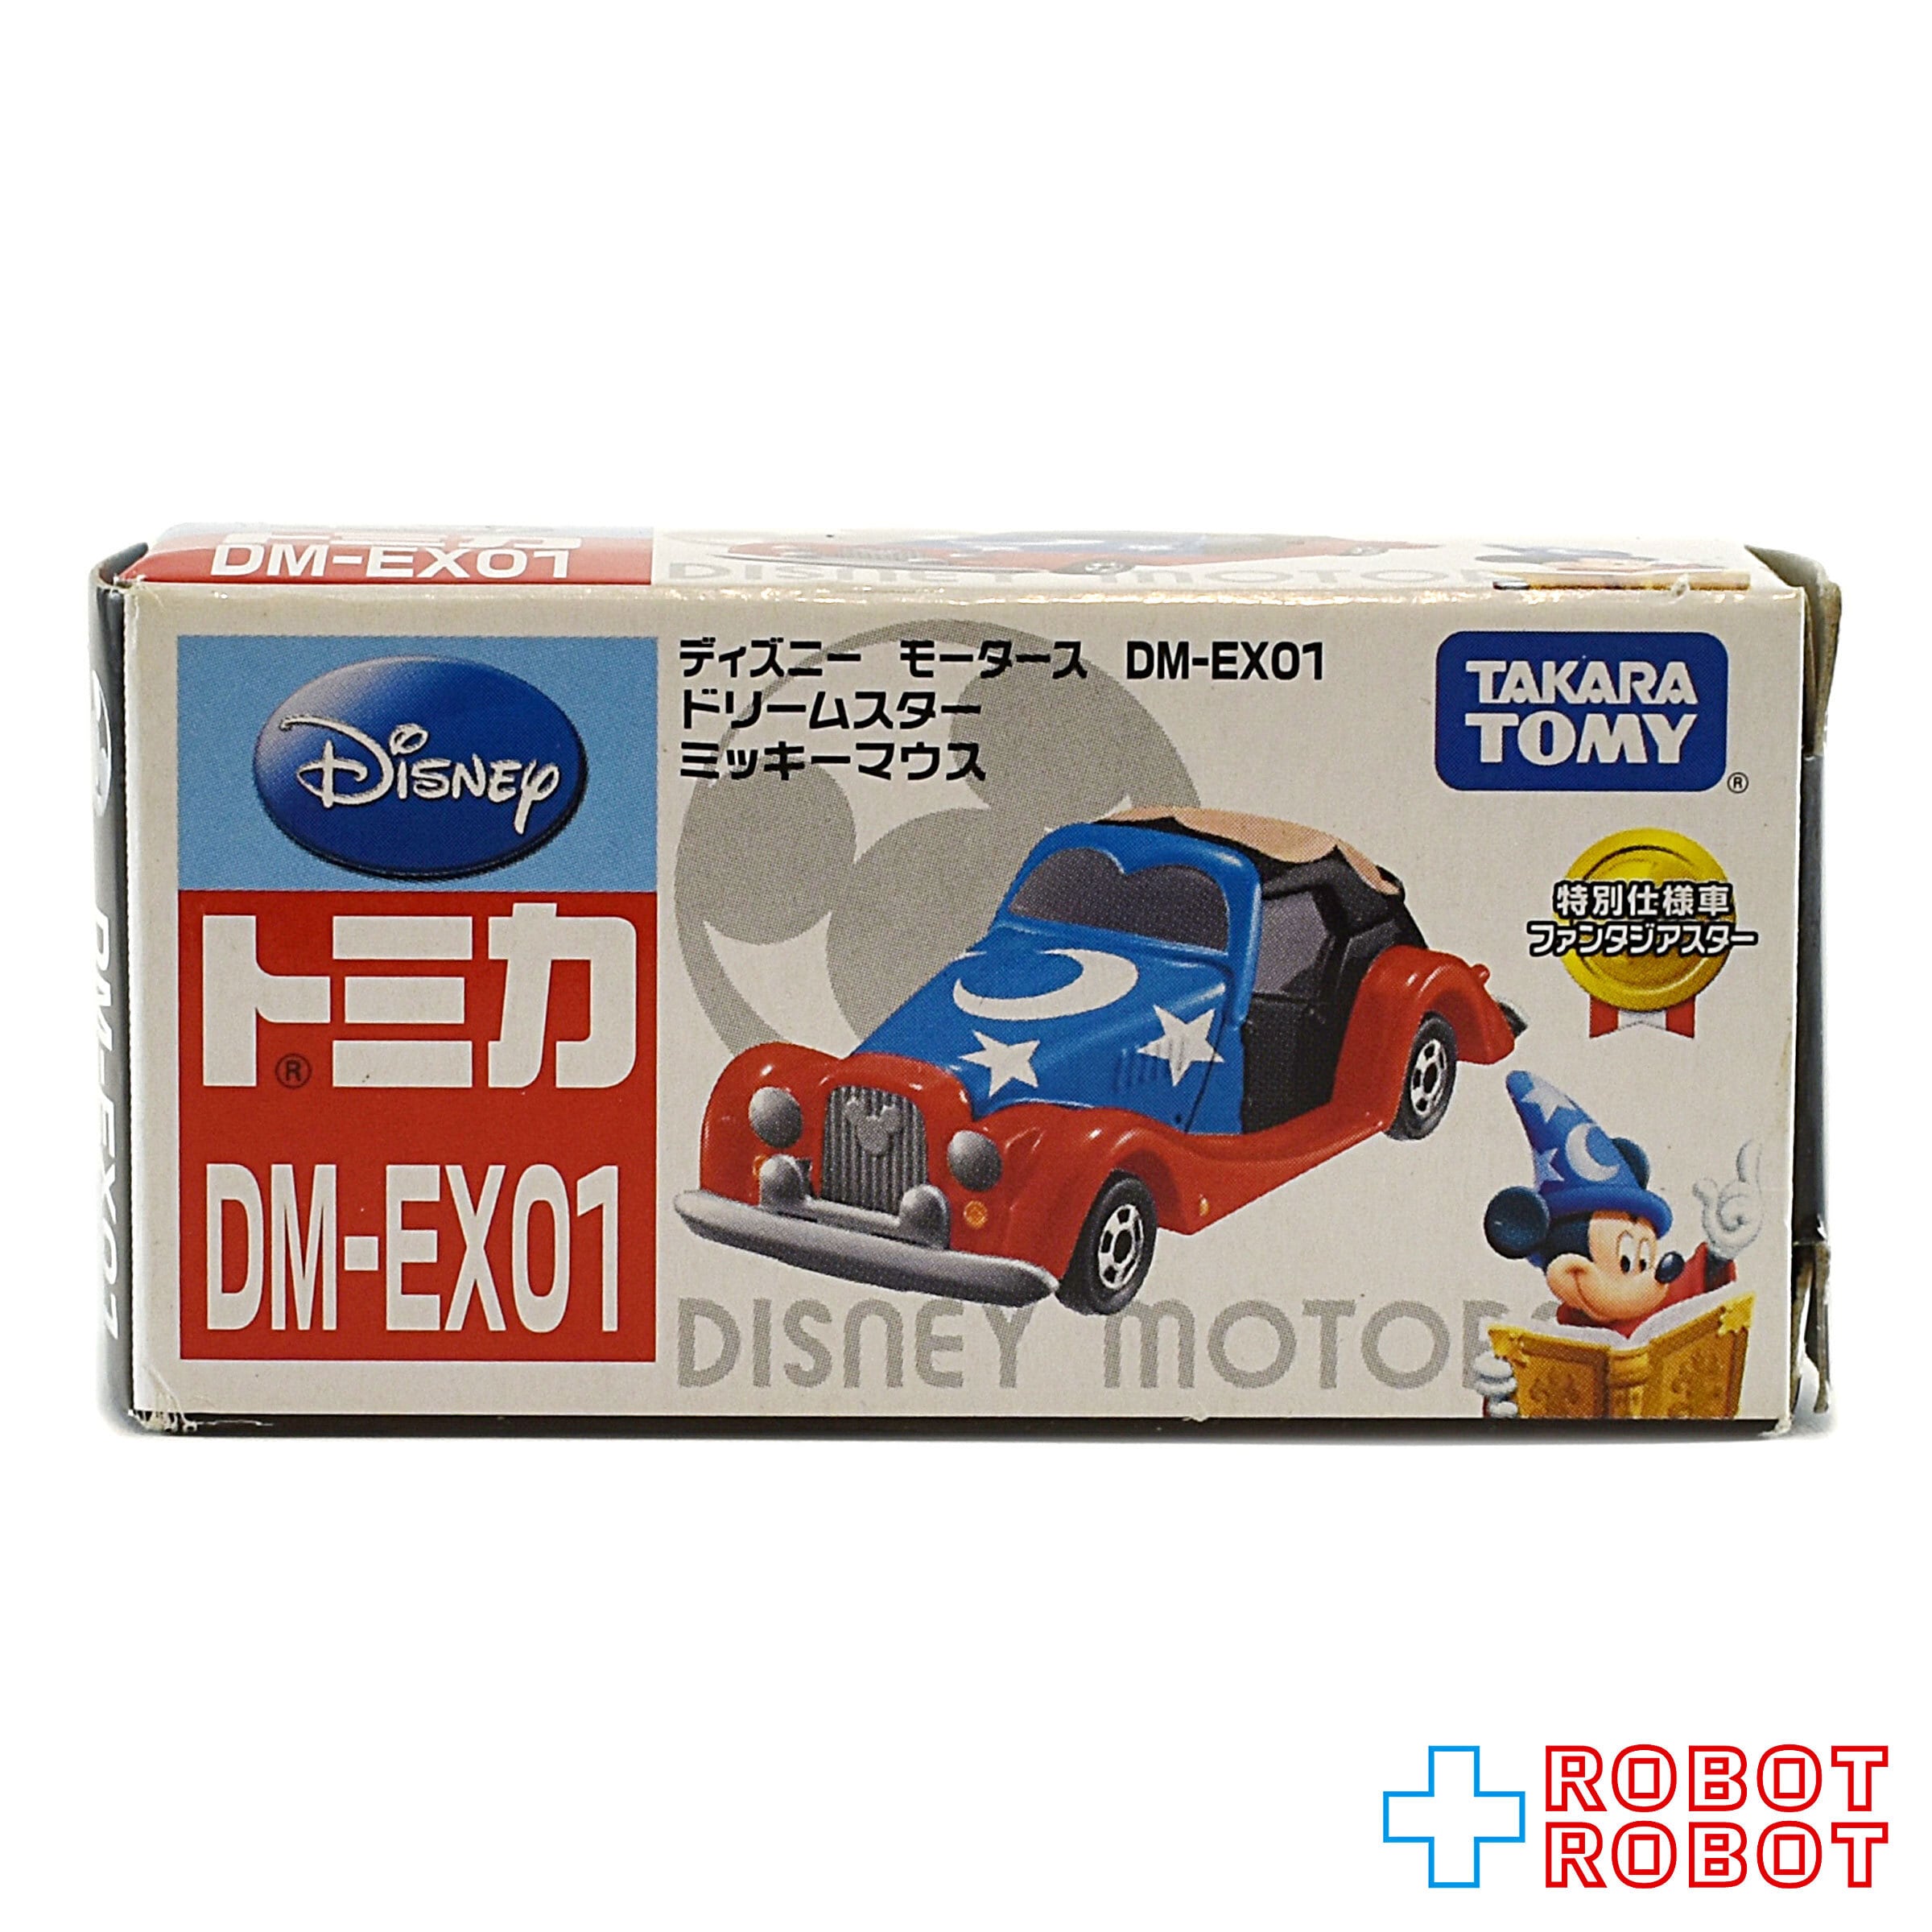 ディズニートミカ DM-EX 1-6 コンプリート品